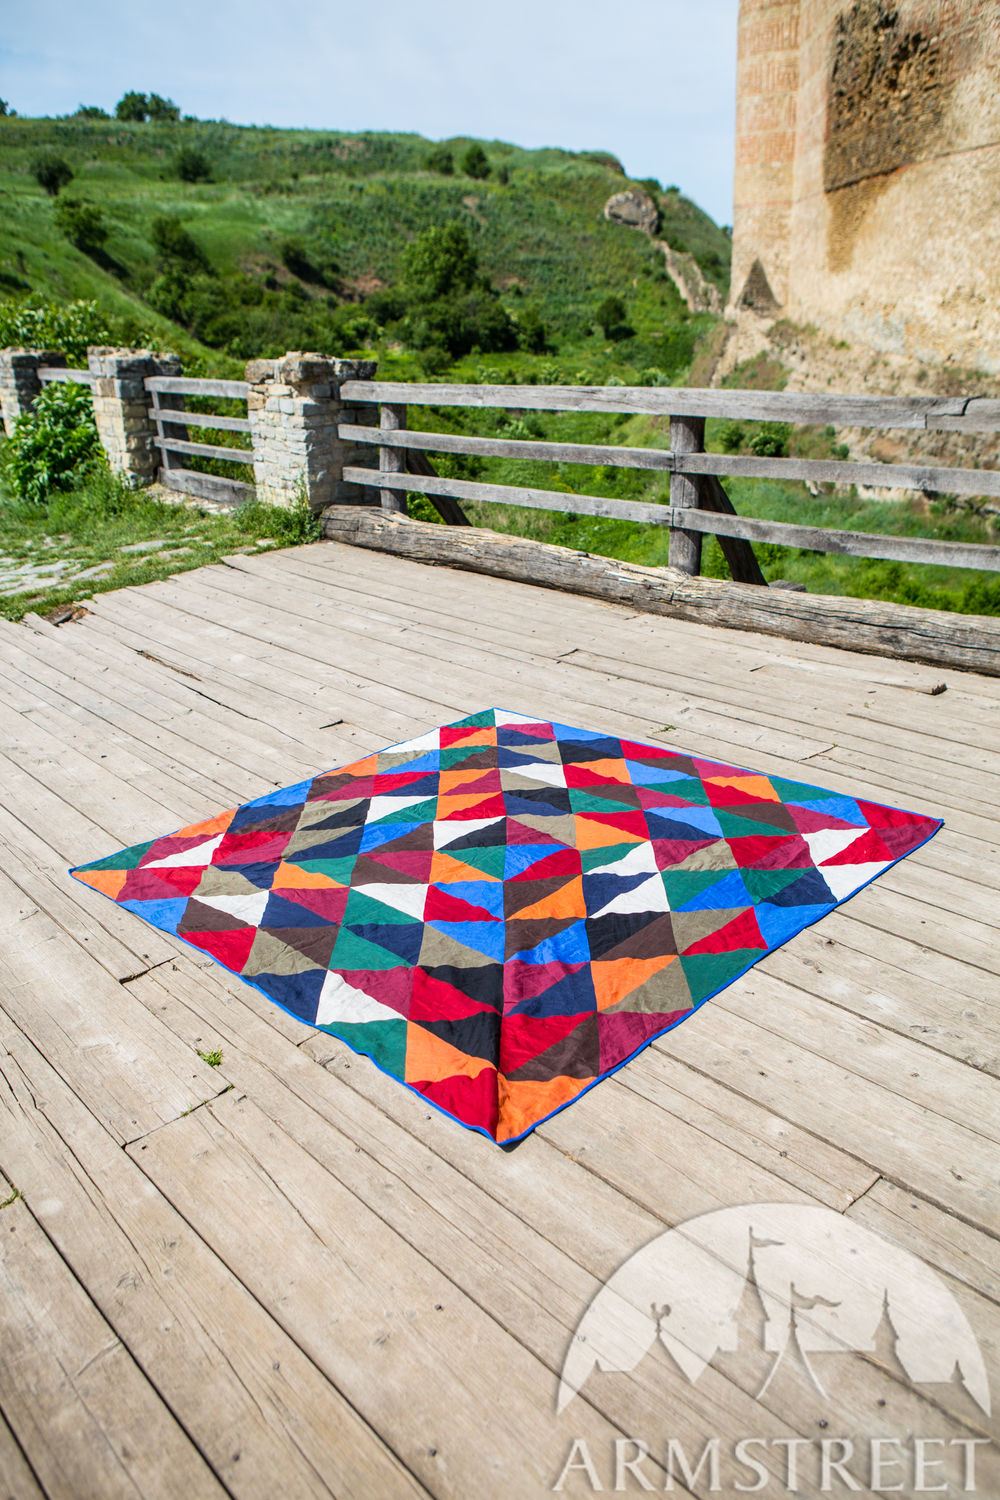 Couverture en patchwork faite de lin et coton